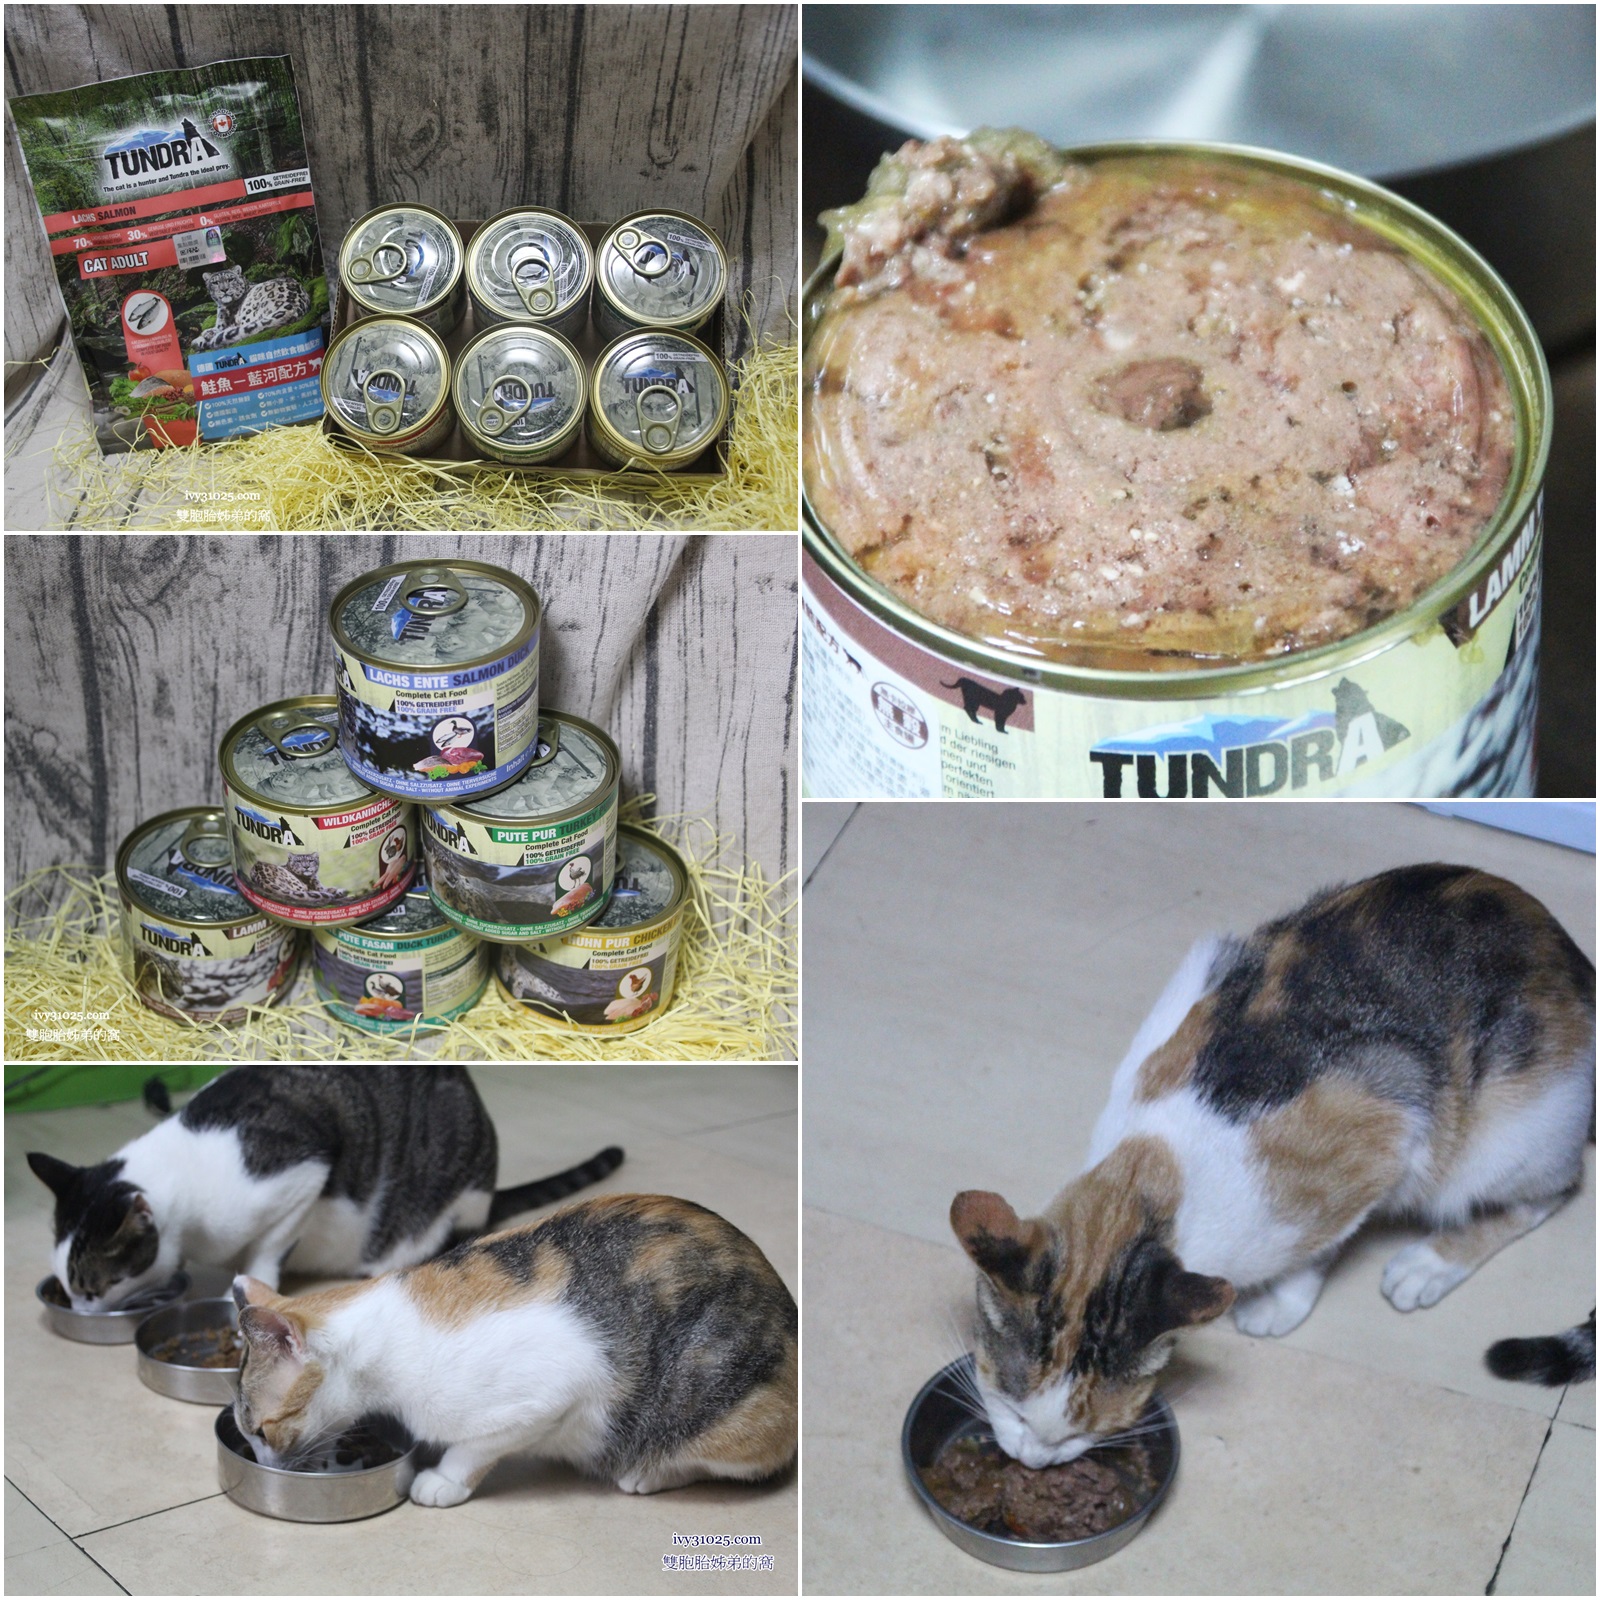 德國TUNDRA 貓咪無穀飼料 | 無榖主食罐 | 自然飲食機能配方 | 愛貓第一步